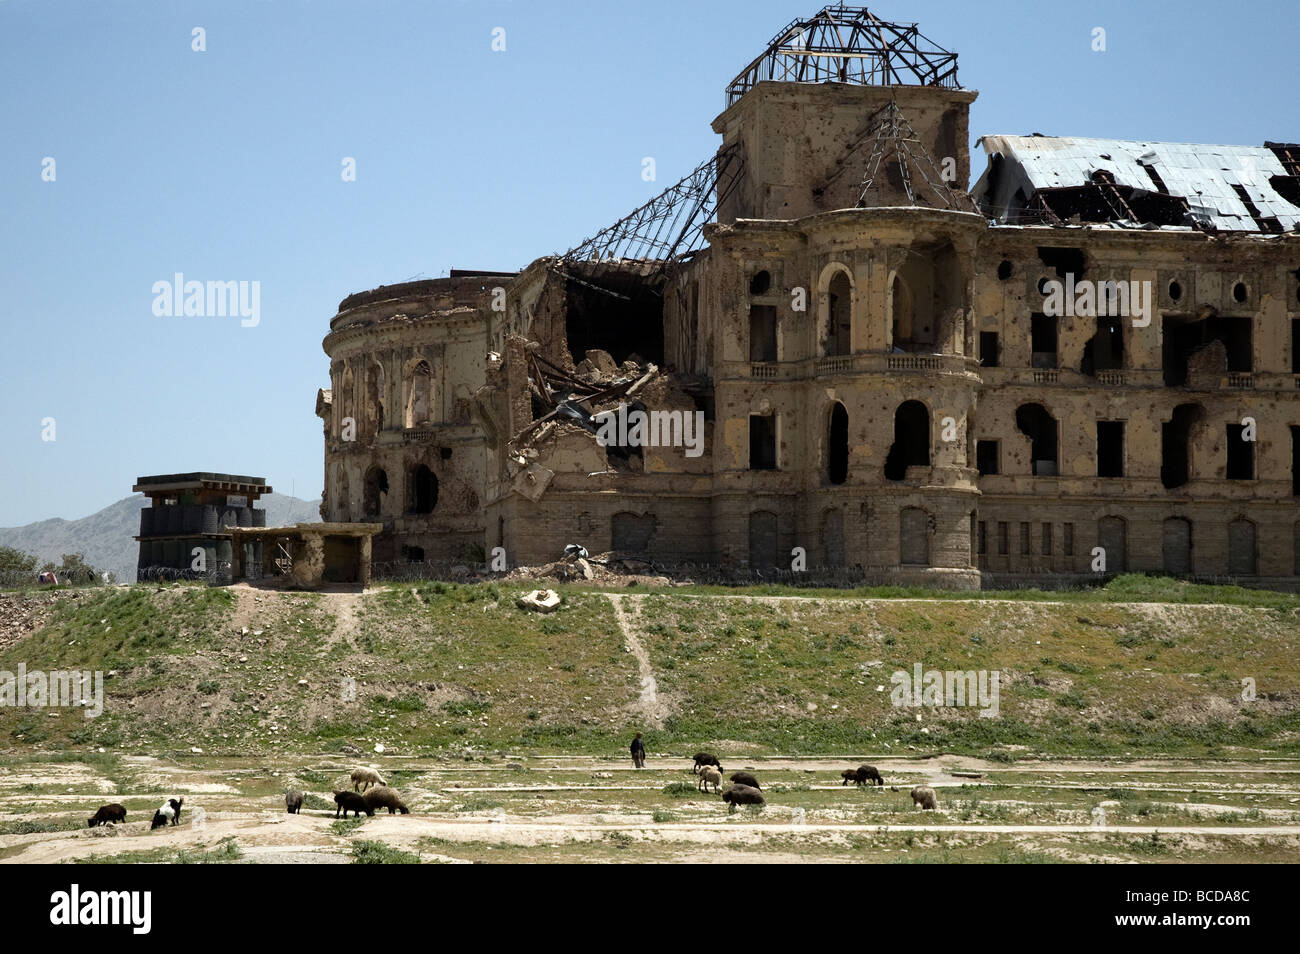 Le palais royal de Darulaman, construit par le roi Amanullah au début 20ème siècle, est une triste ruine dans la périphérie de Kaboul Banque D'Images